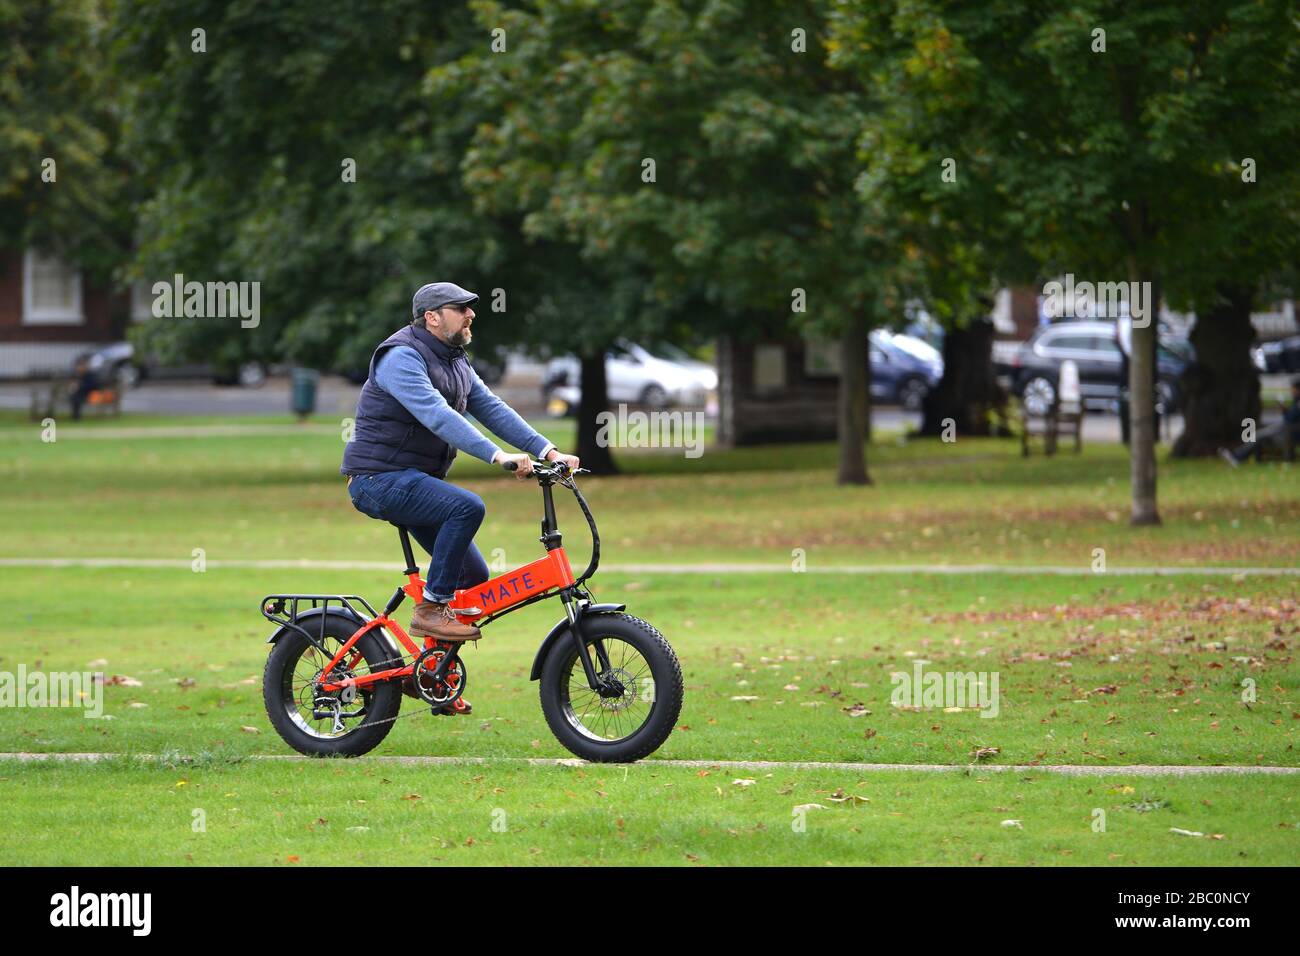 Man cycling on Richmond Green, Richmond, London, UK Stock Photo